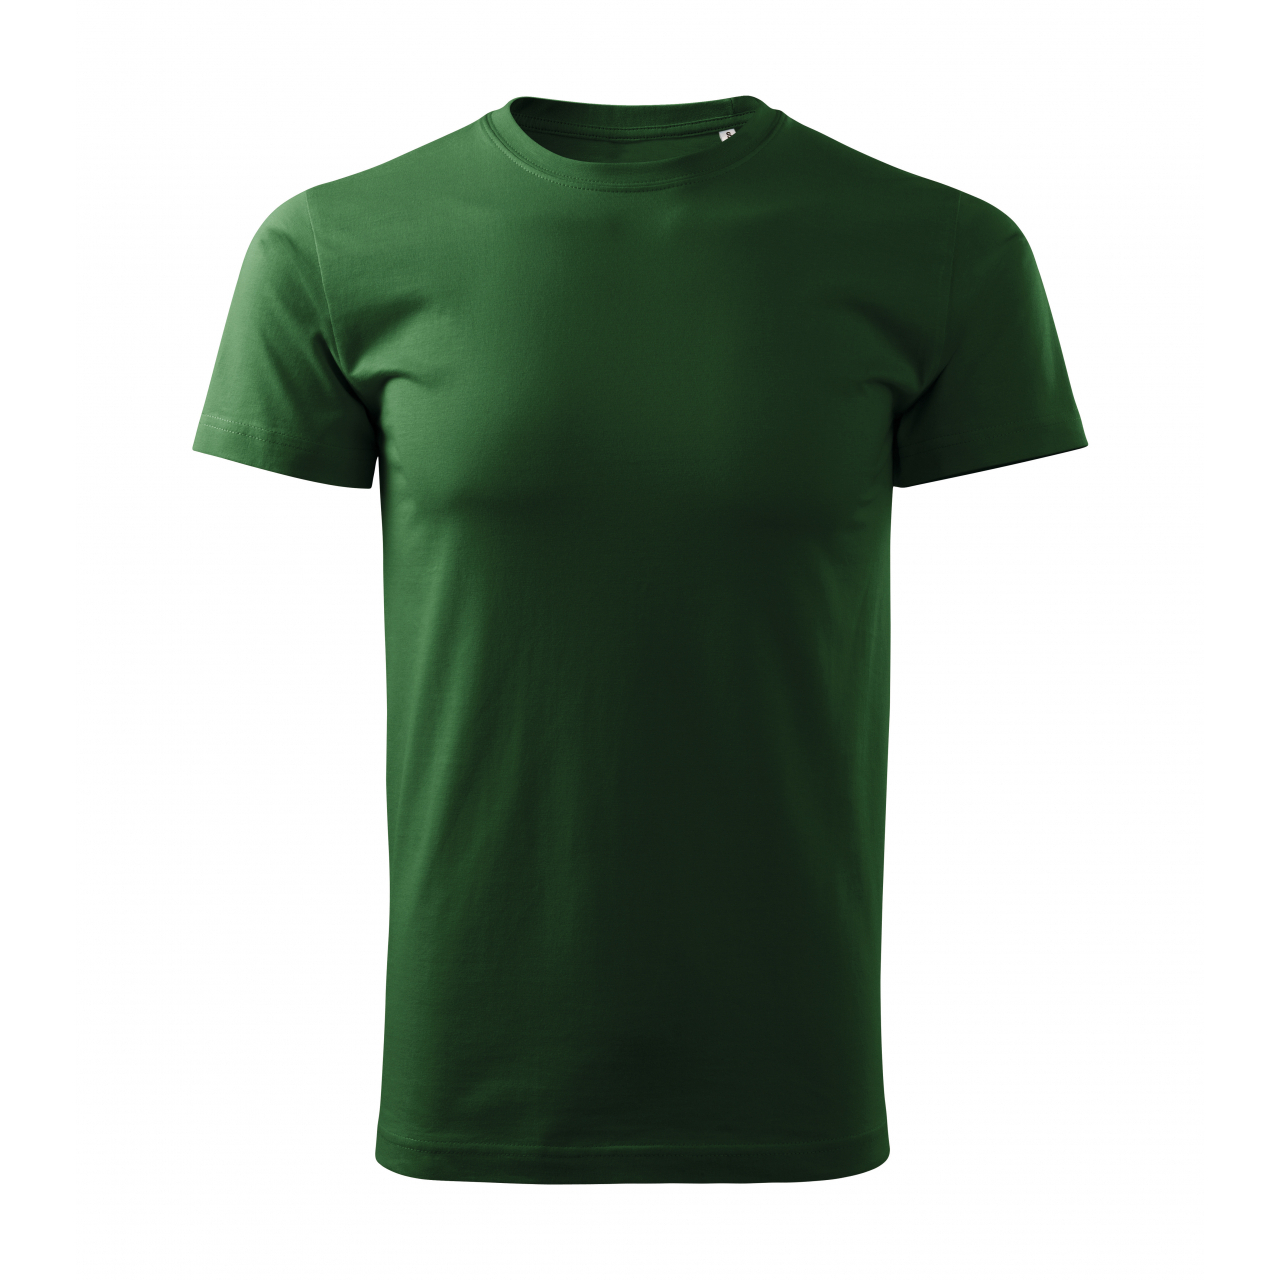 Tričko pánské Malfini Basic Free - tmavě zelené, XL